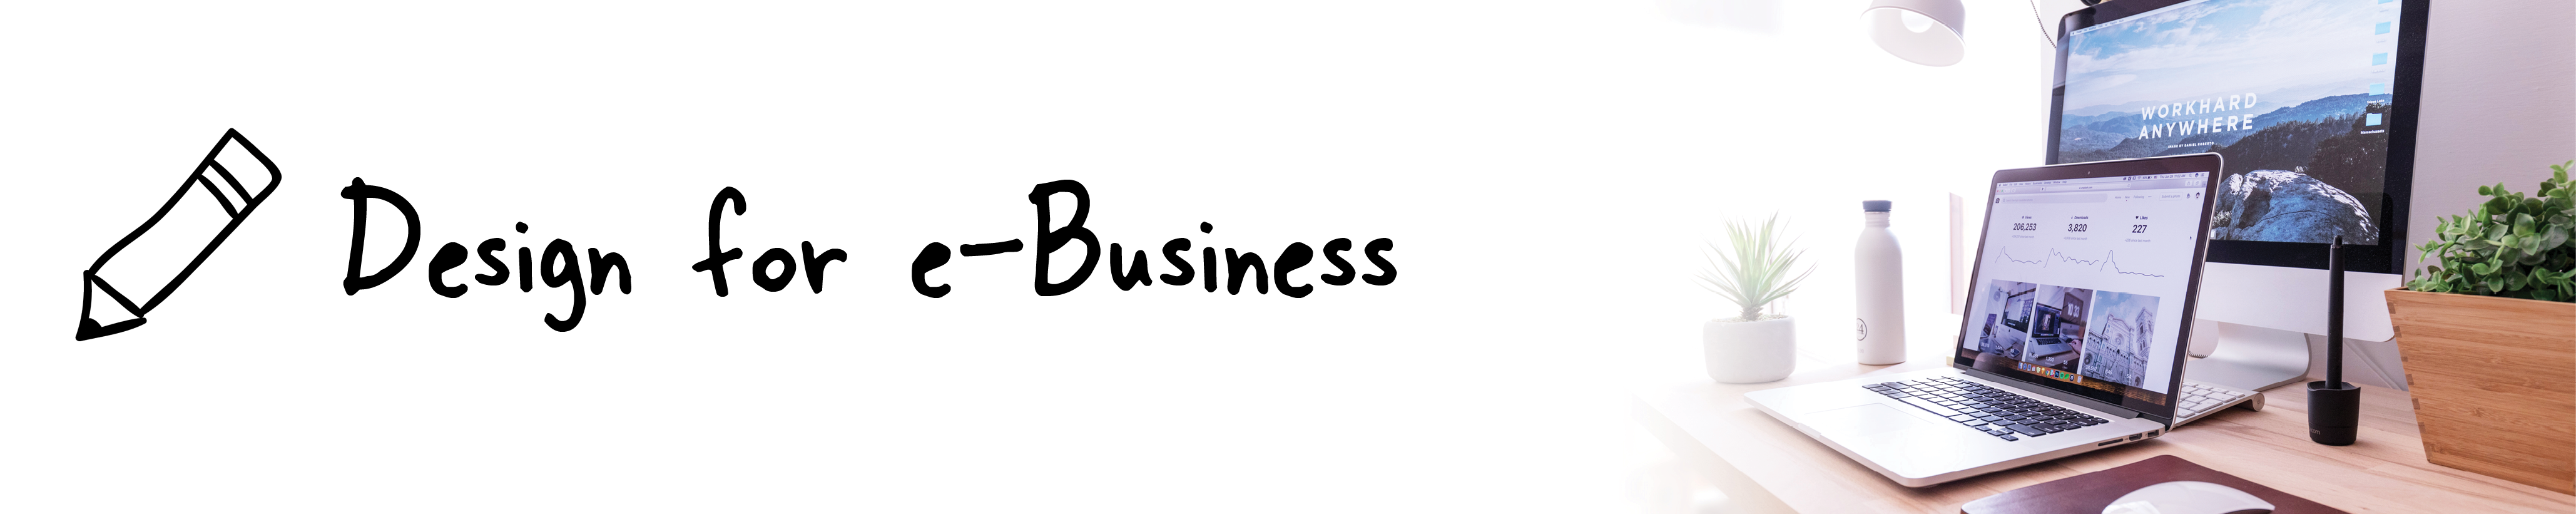 Design for e-Business